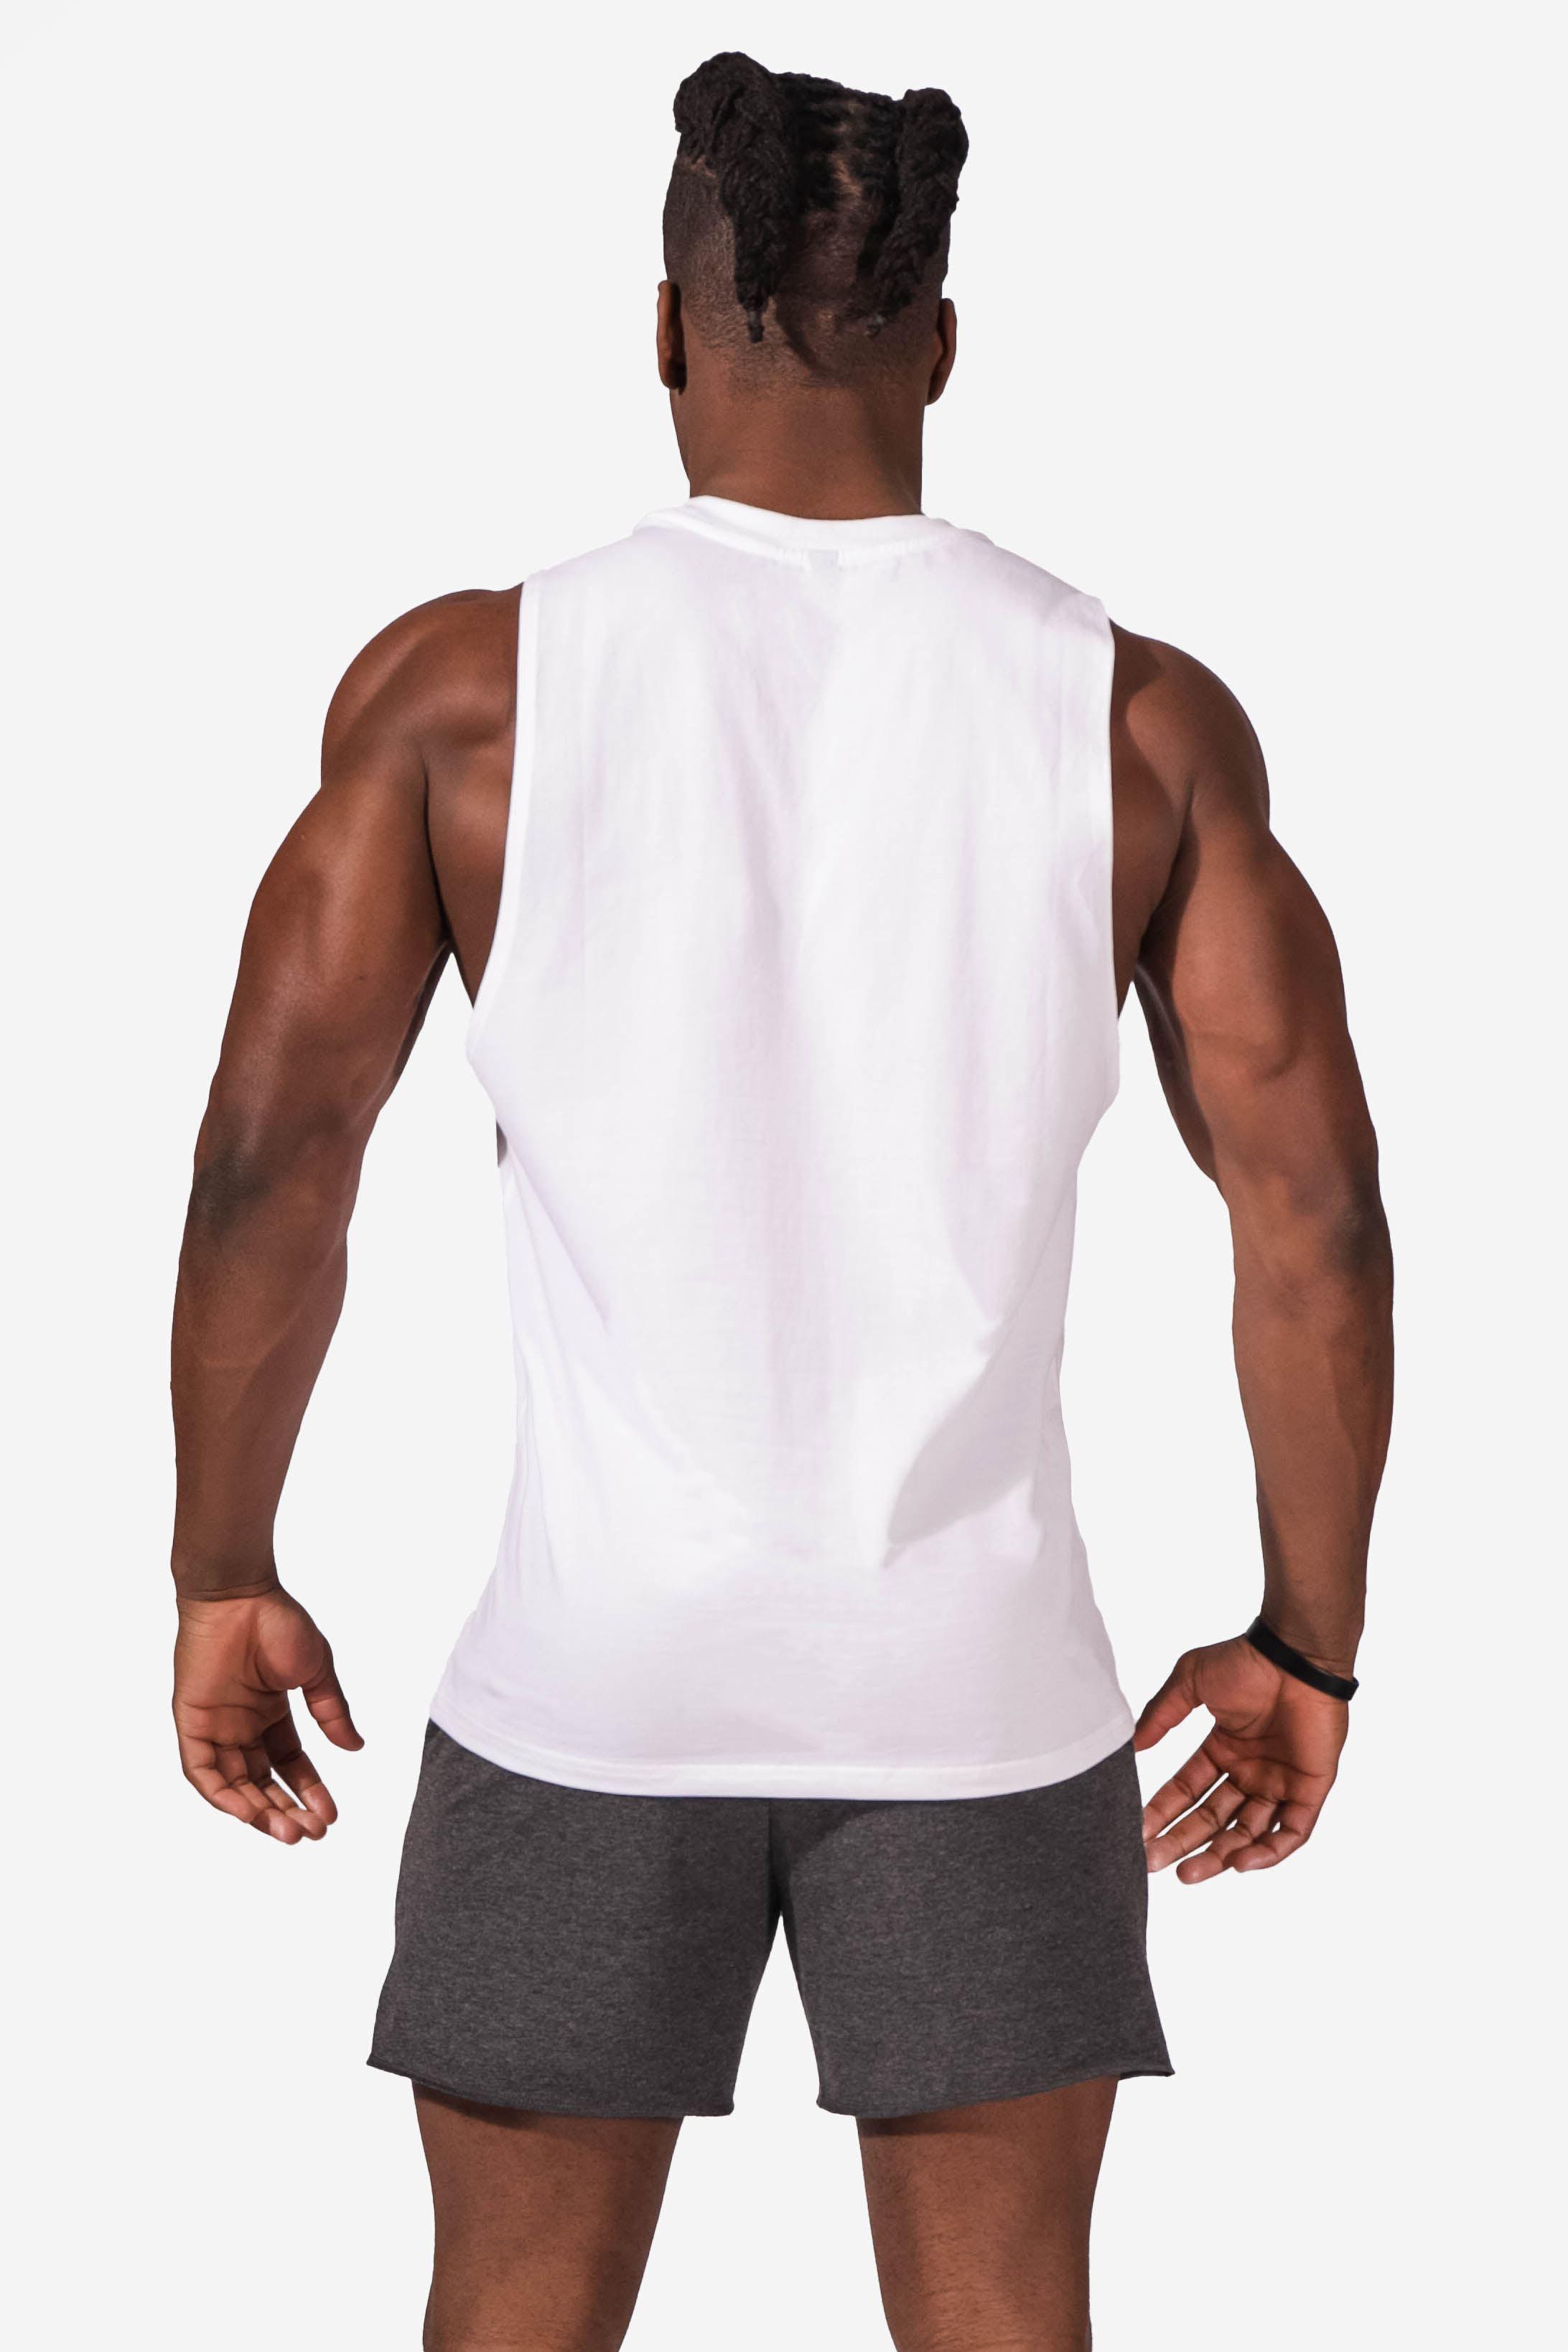 Men's Sleeveless Cut Off Tank Top Shirt (6569382379587)